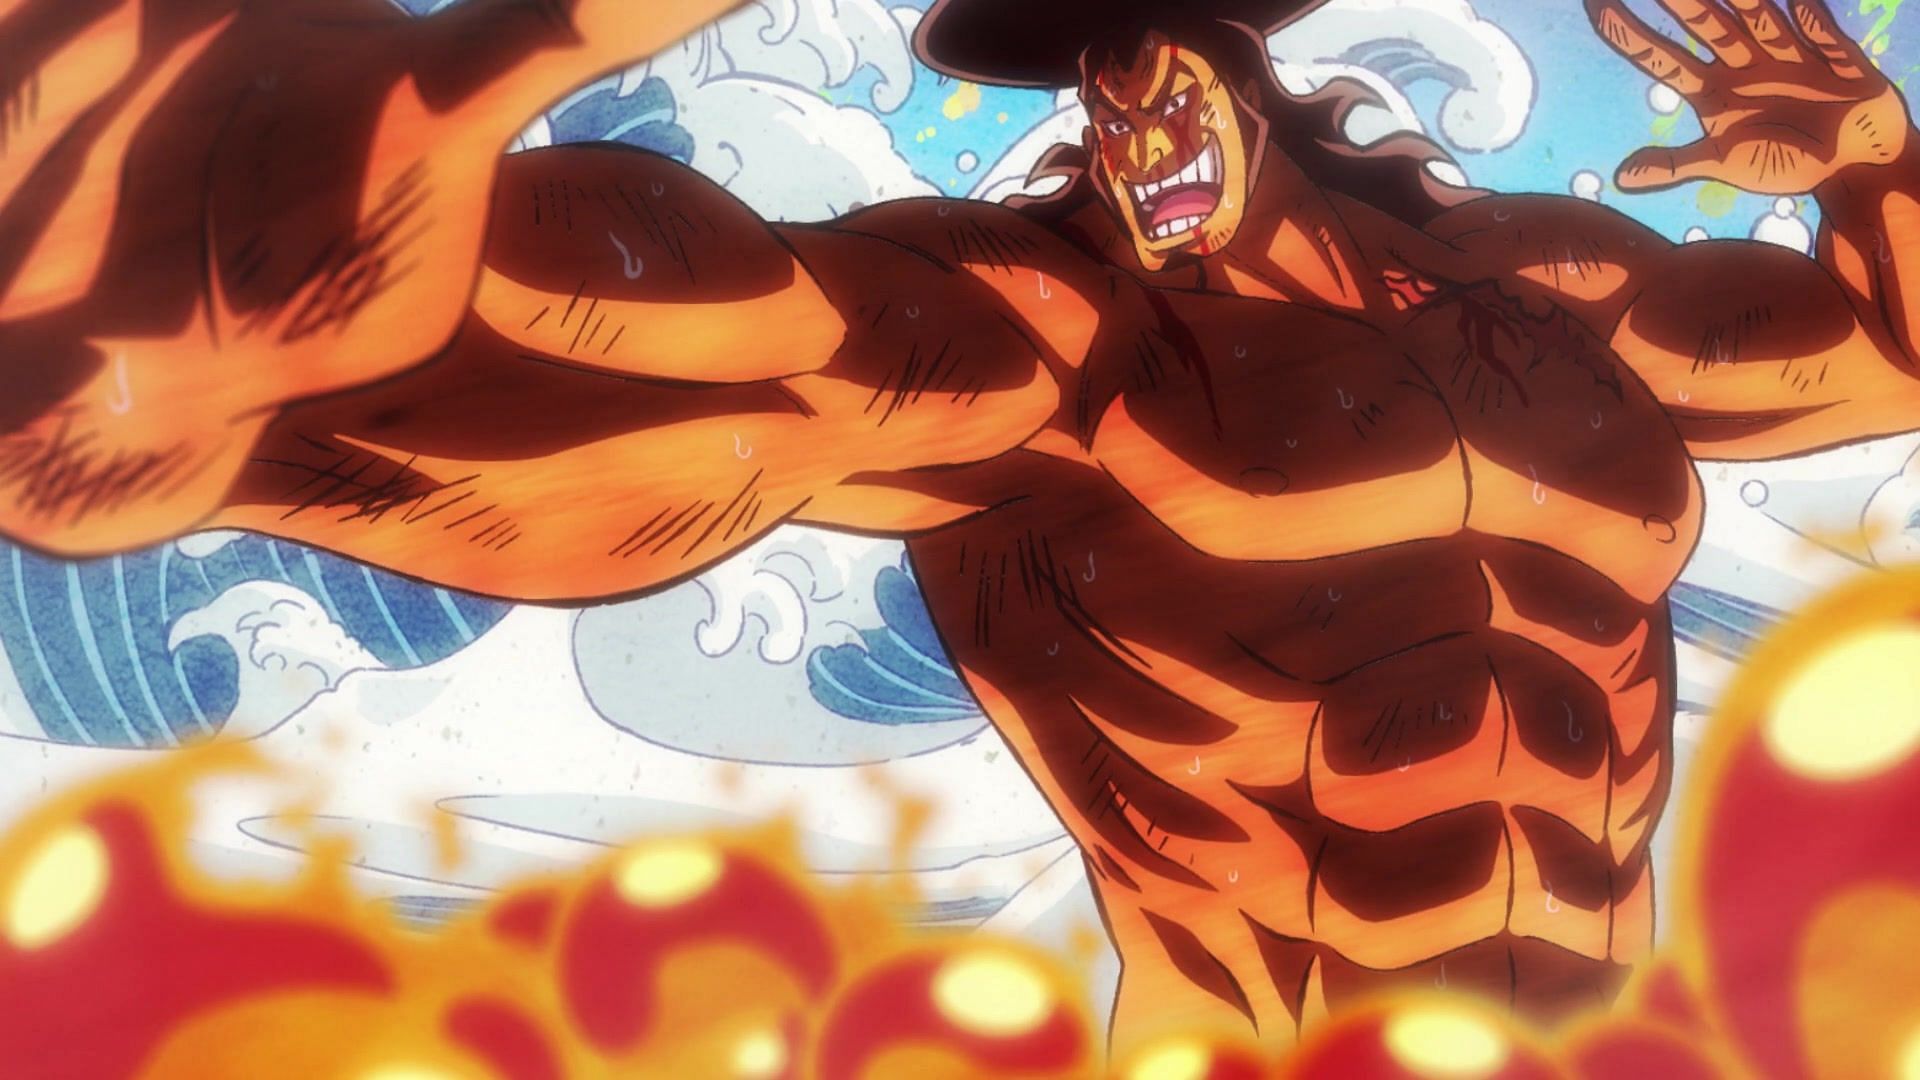 Oden Kozuki (Image via Toei Animation, One Piece)